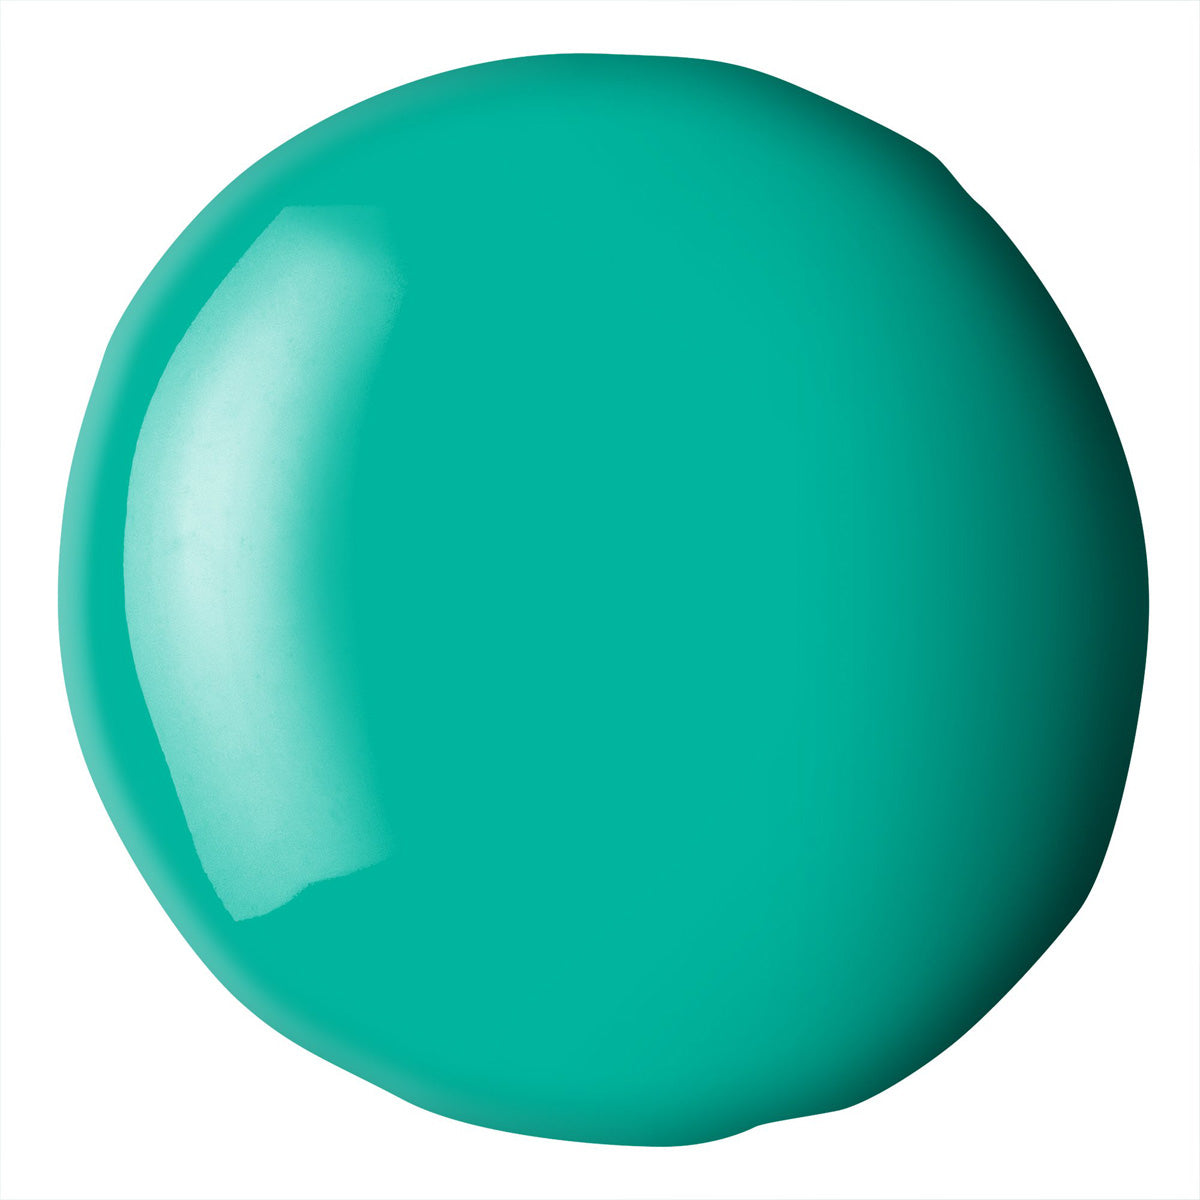 Liqitex Basics Fluid Acryl 118ml - Bright Aqua Green S1